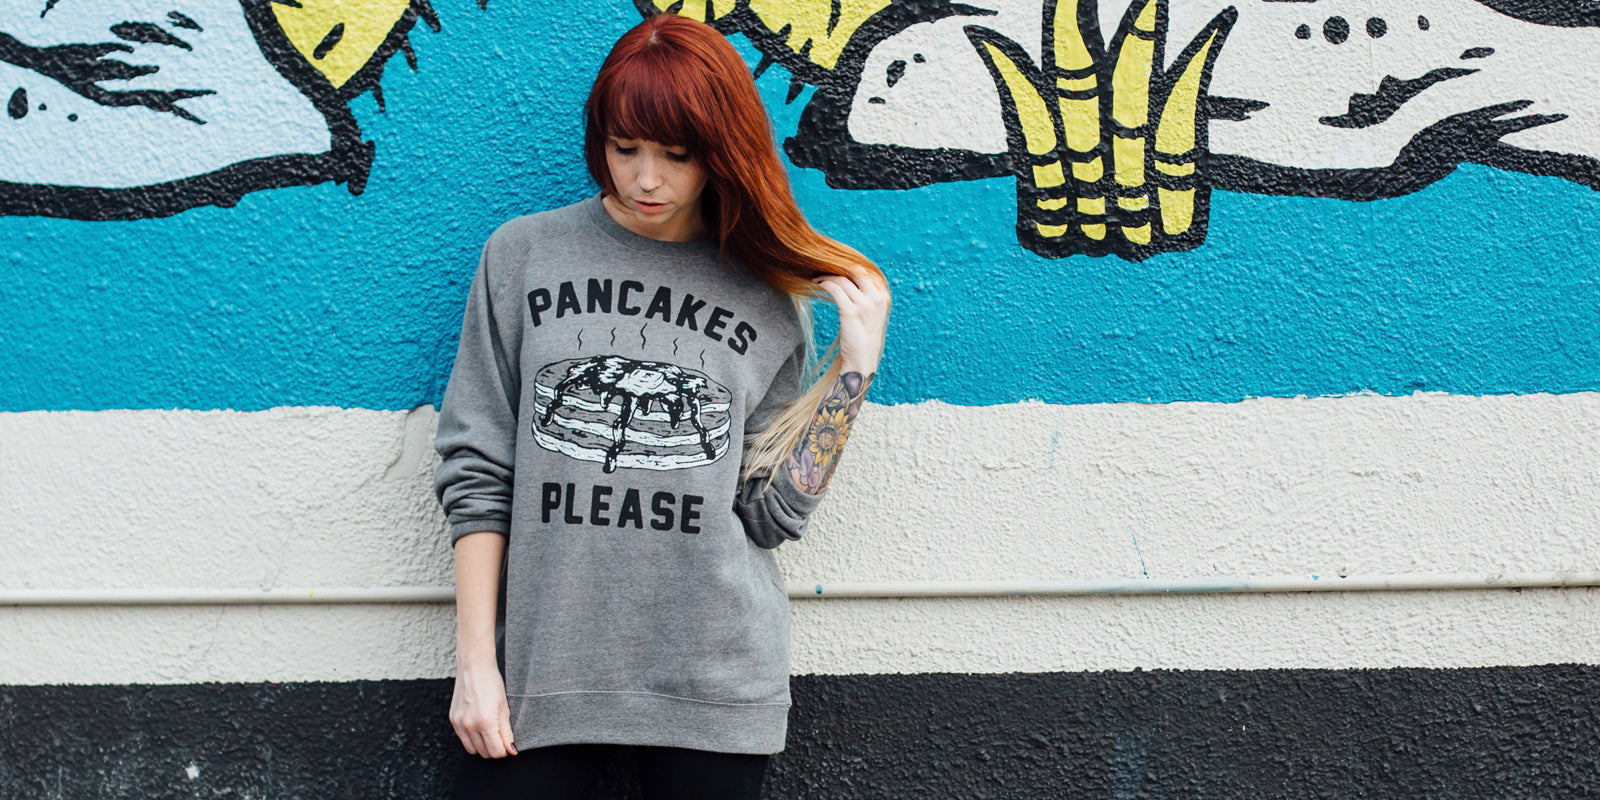 Pancakes Please Women's Vintage Raglan Crewneck Sweatshirt for Breakfast Brunch Foodie Food Lovers